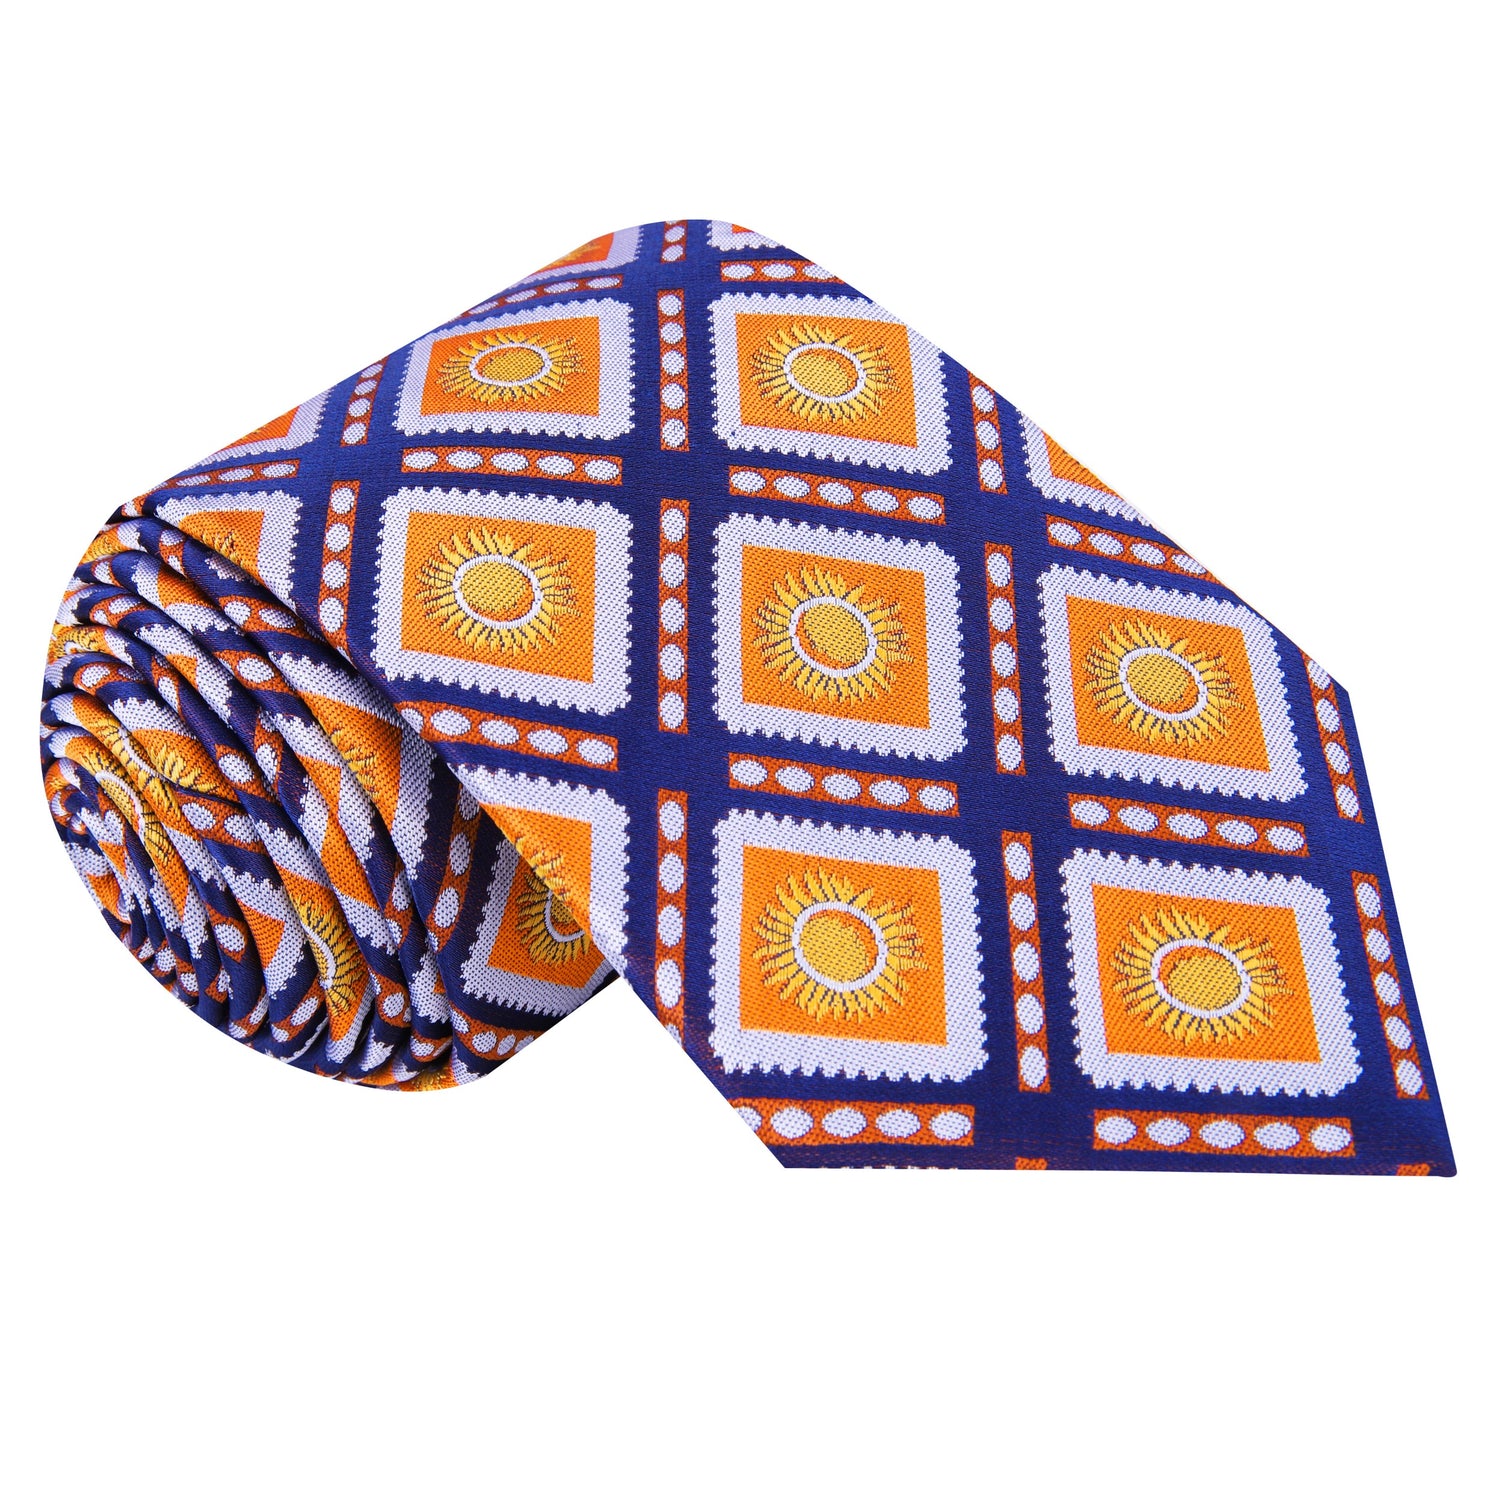  A Dark Blue, Orange Sunburst Design Silk Tie